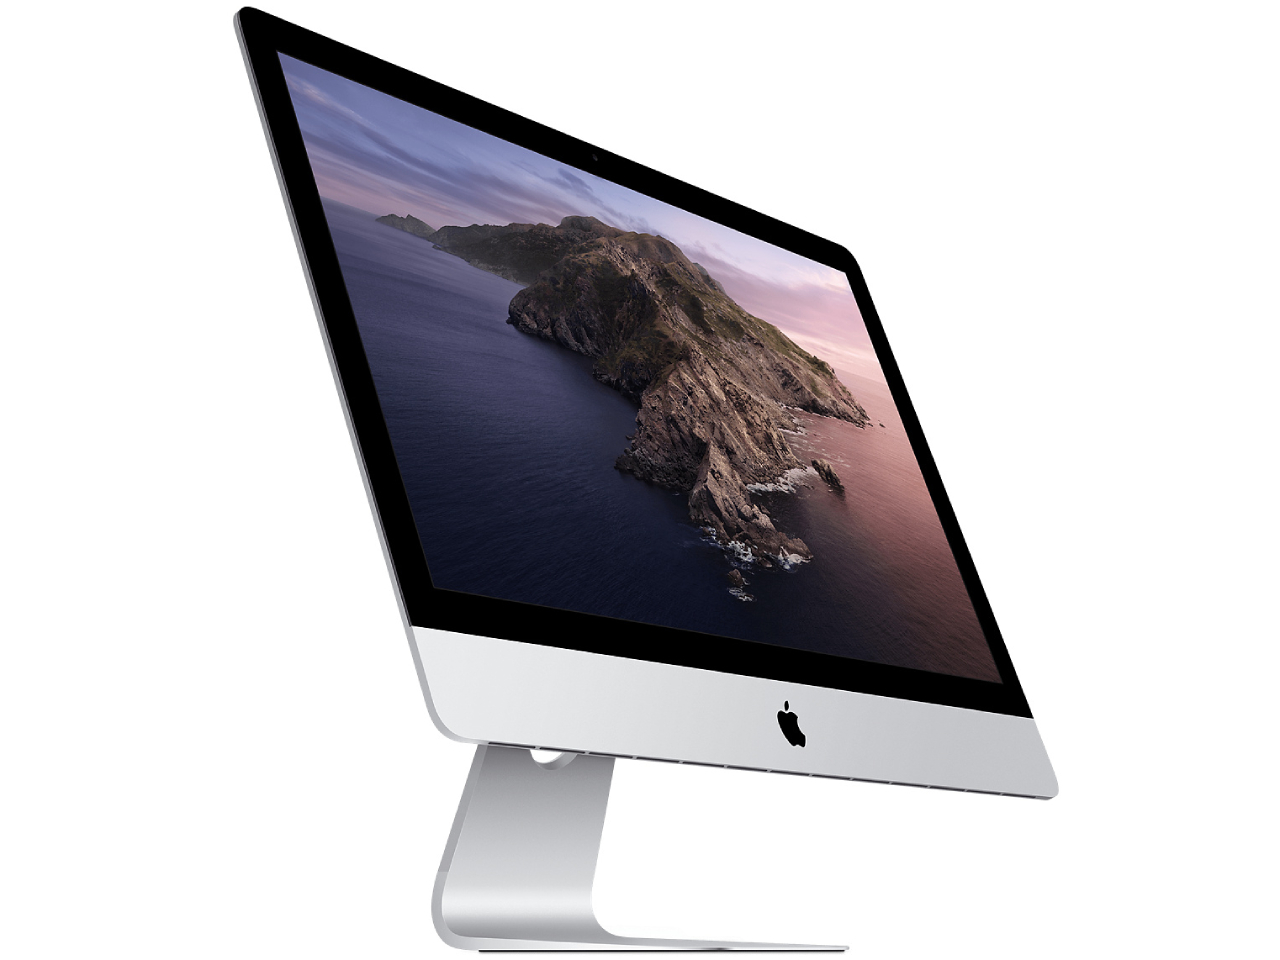 価格.com - 『本体 斜め』 iMac 27インチ Retina 5Kディスプレイモデル MXWT2J/A [3100] の製品画像